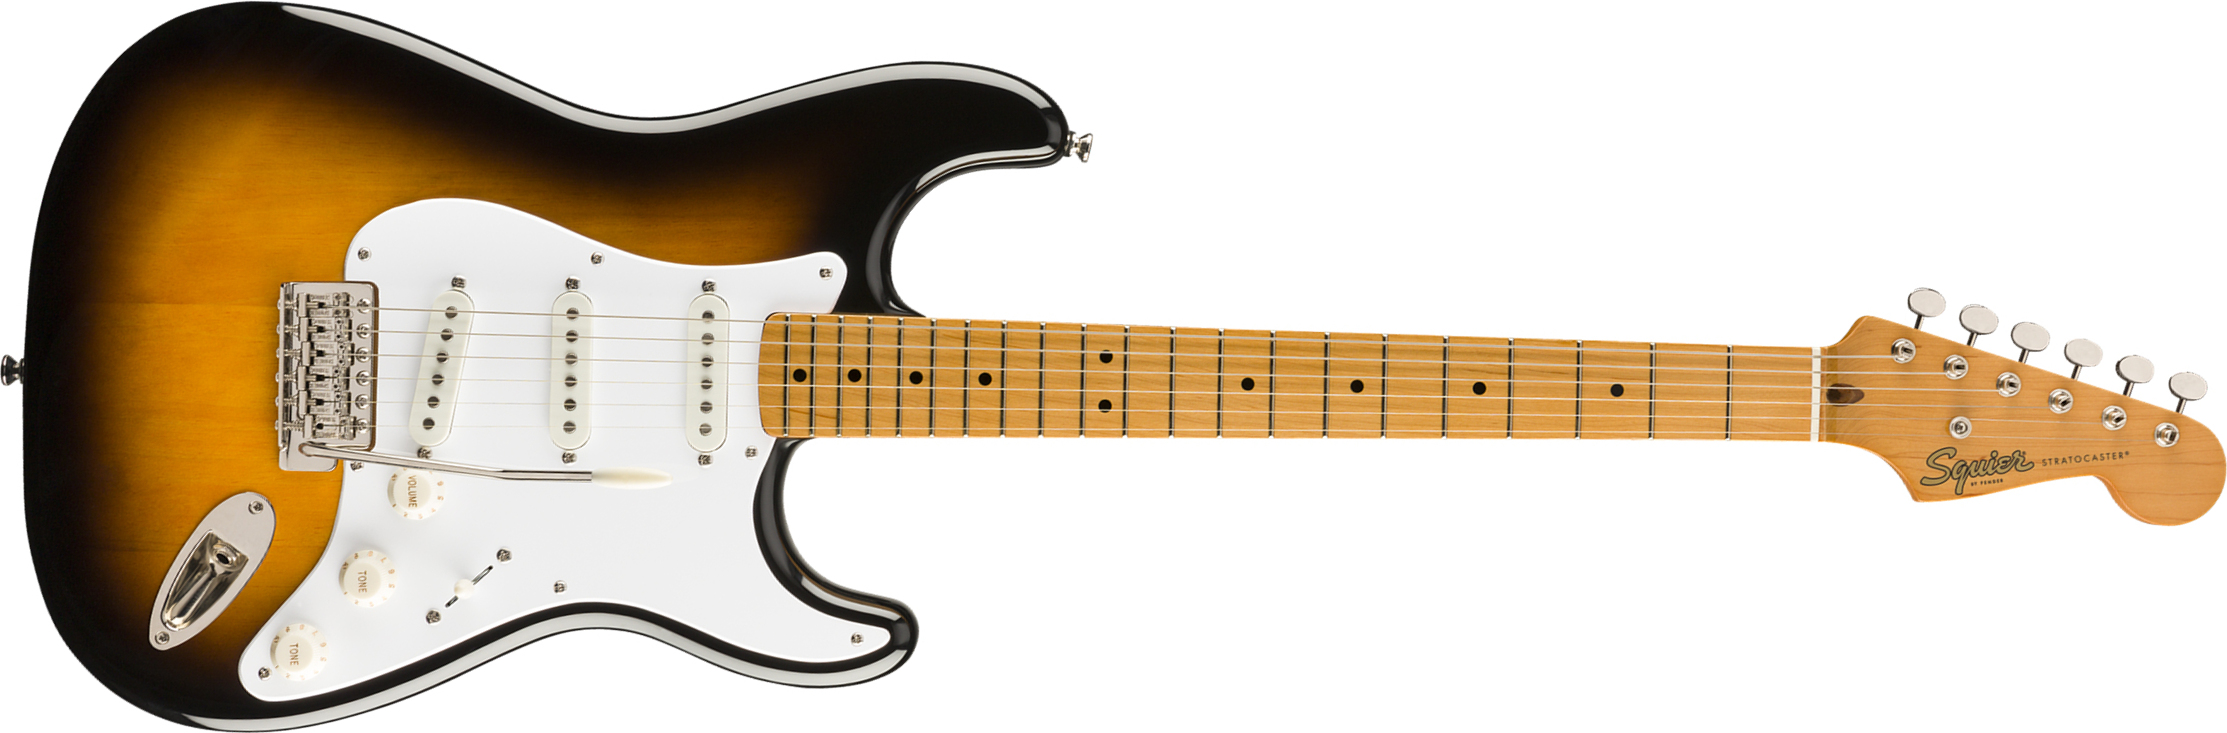 Squier Strat '50s Classic Vibe 2019 Mn 2019 - 2-color Sunburst - Str shape electric guitar - Main picture